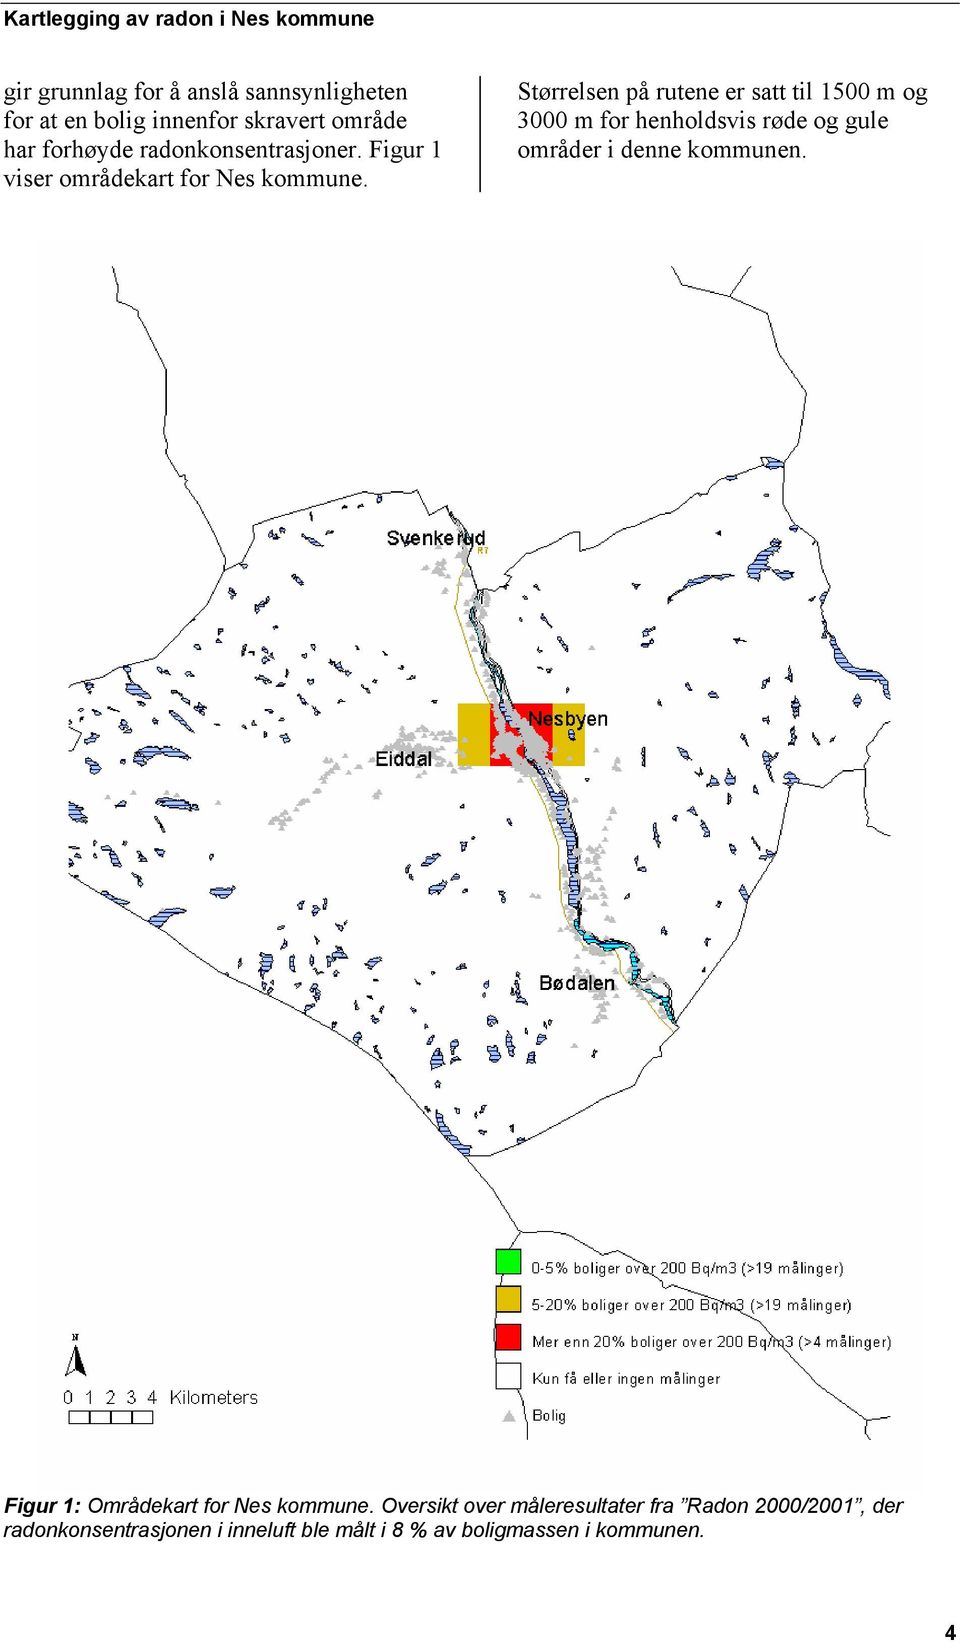 Størrelsen på rutene er satt til 1500 m og 3000 m for henholdsvis røde og gule områder i denne kommunen.